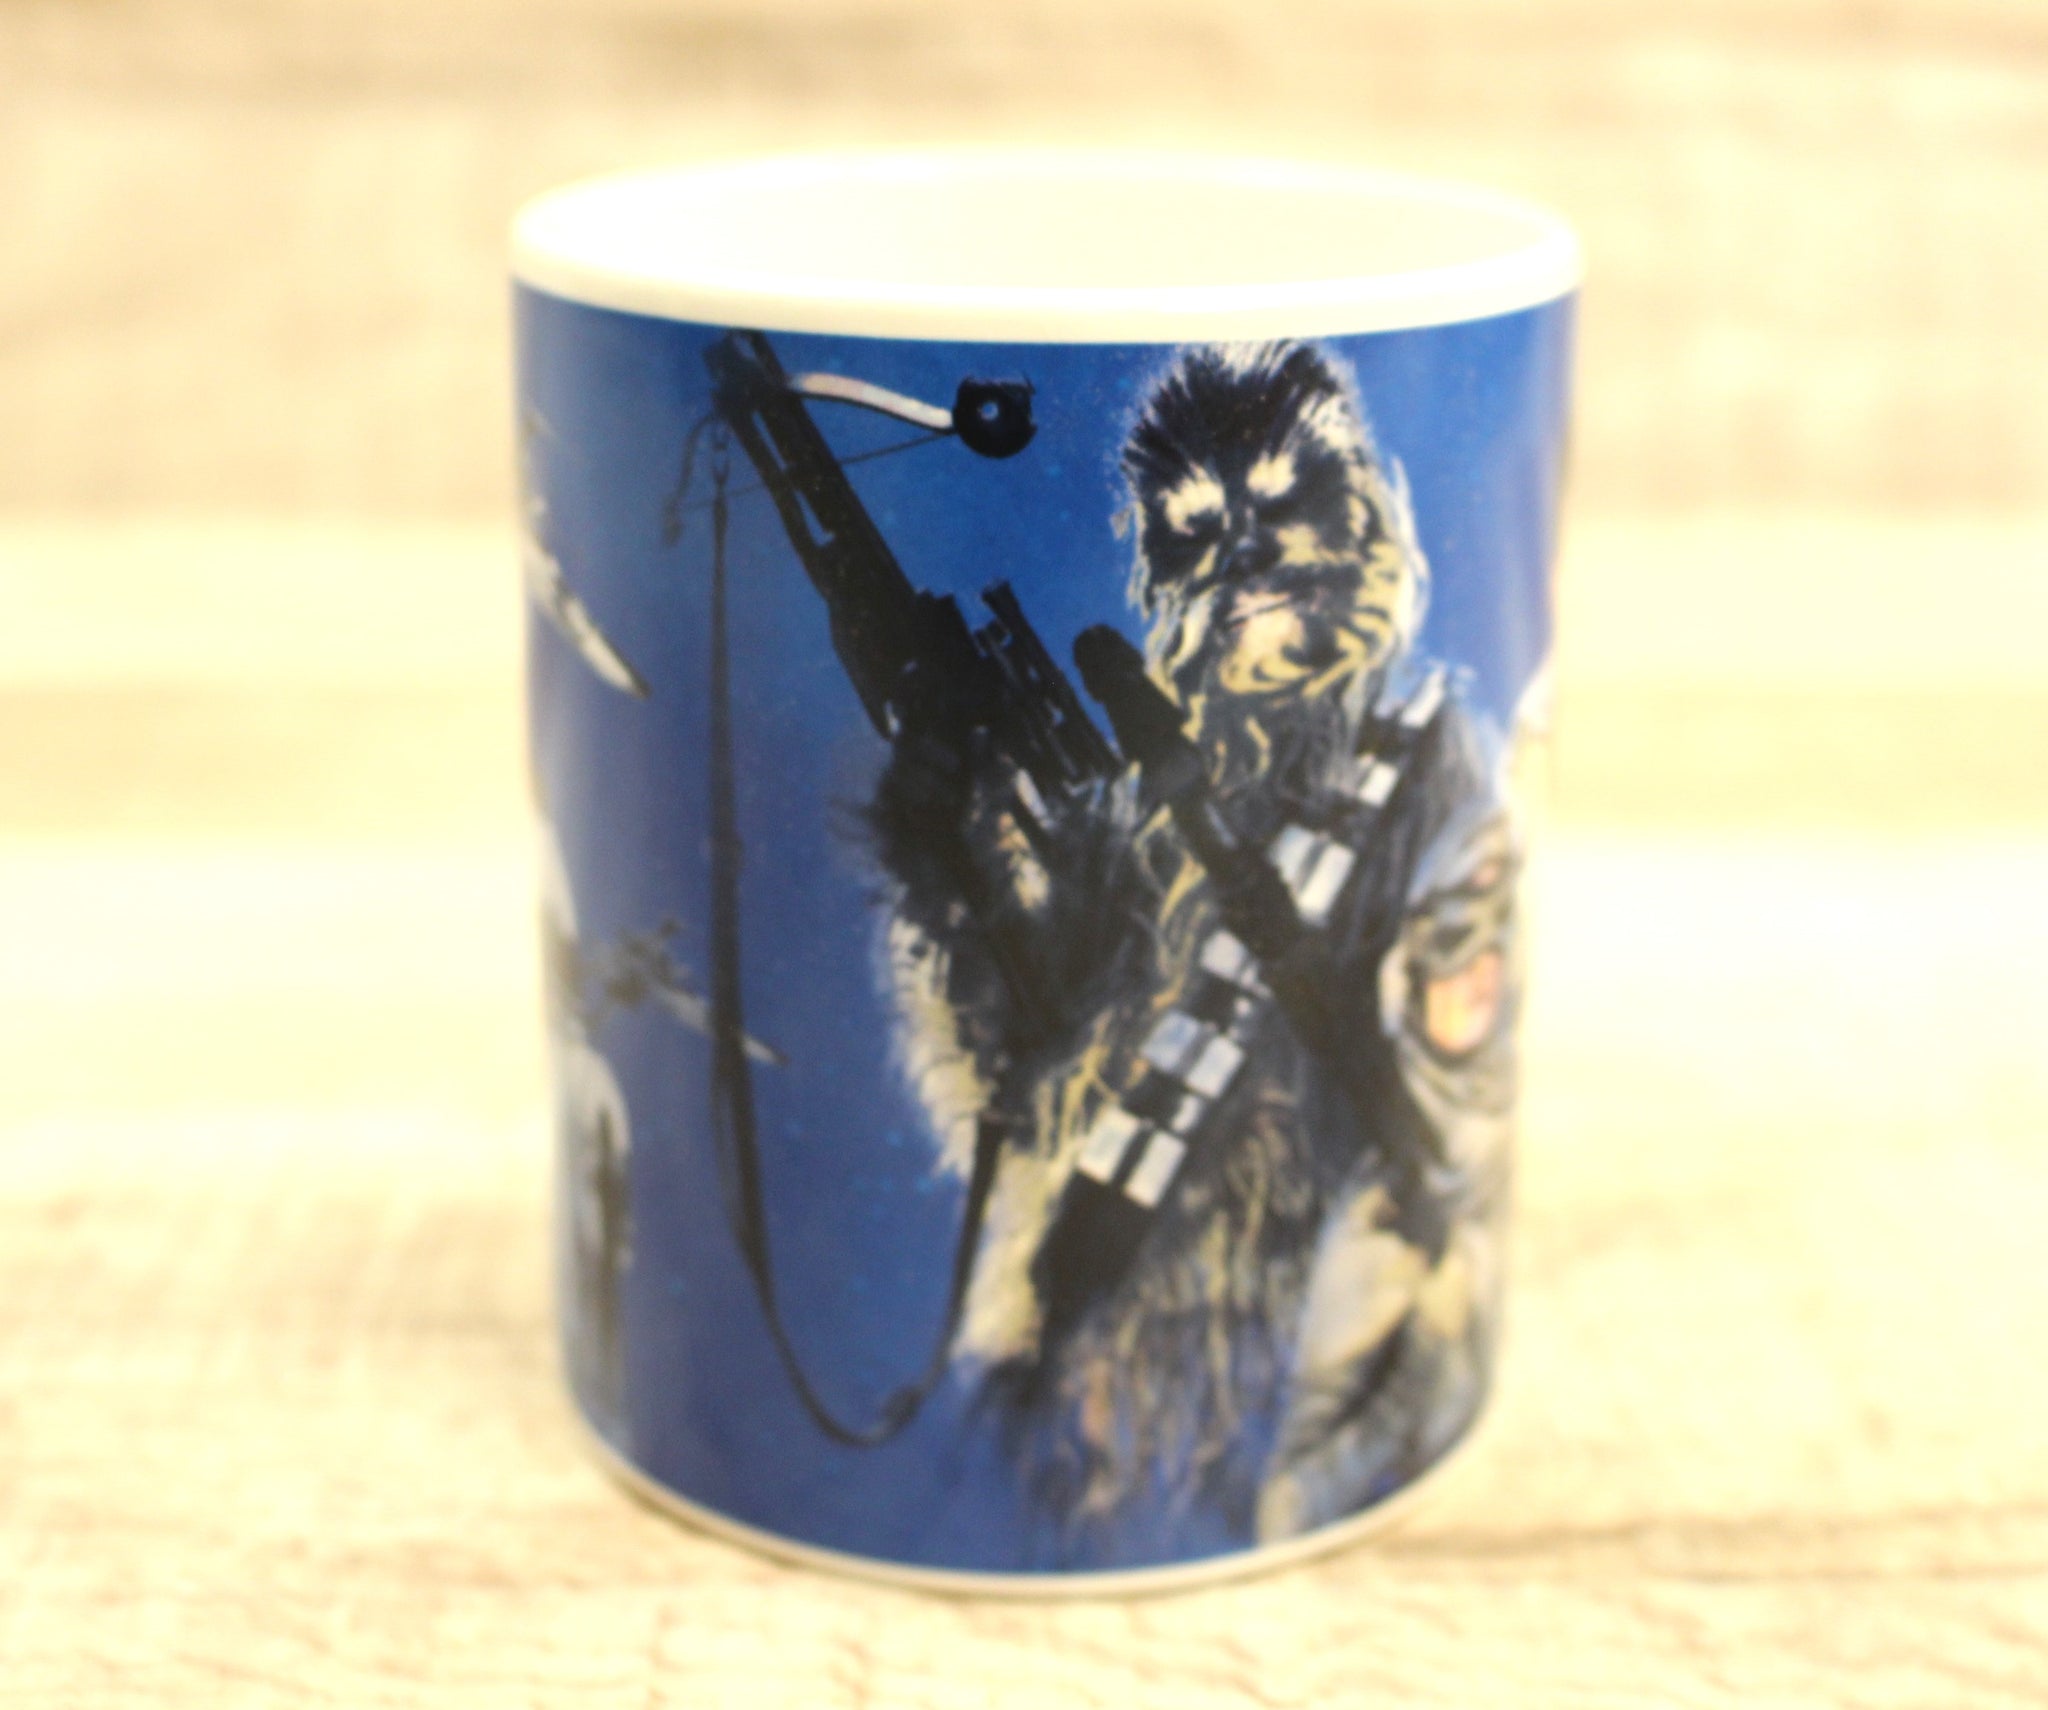 Star Wars Galerie Coffee Mug Cup